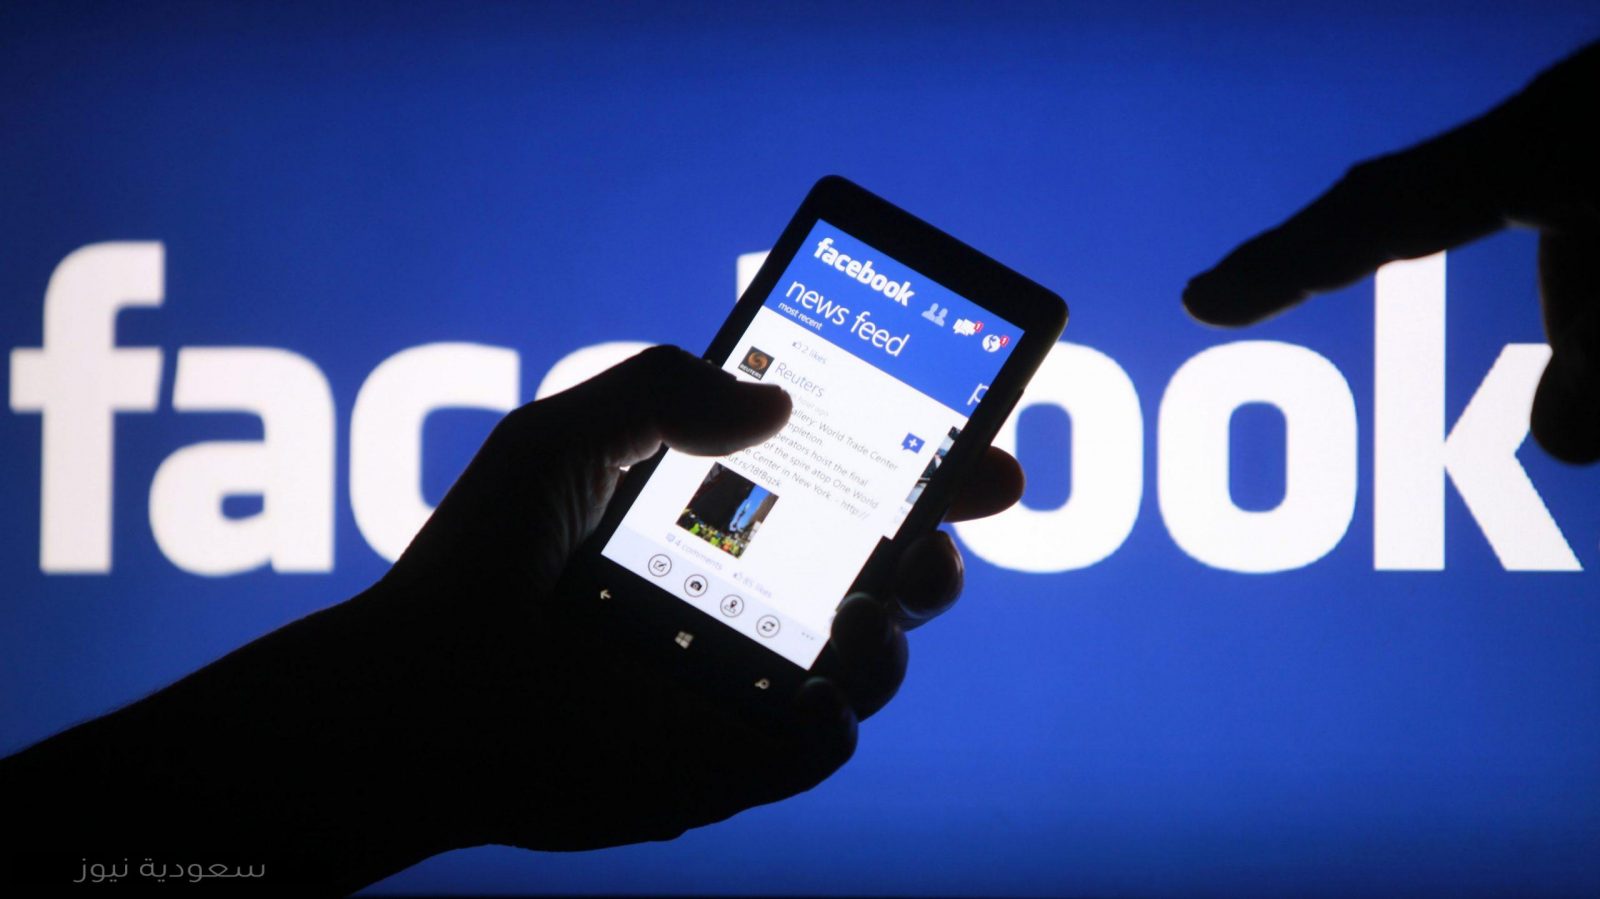 طريقة الدخول إلى فيسبوك Facebook دون تسجيل الحساب